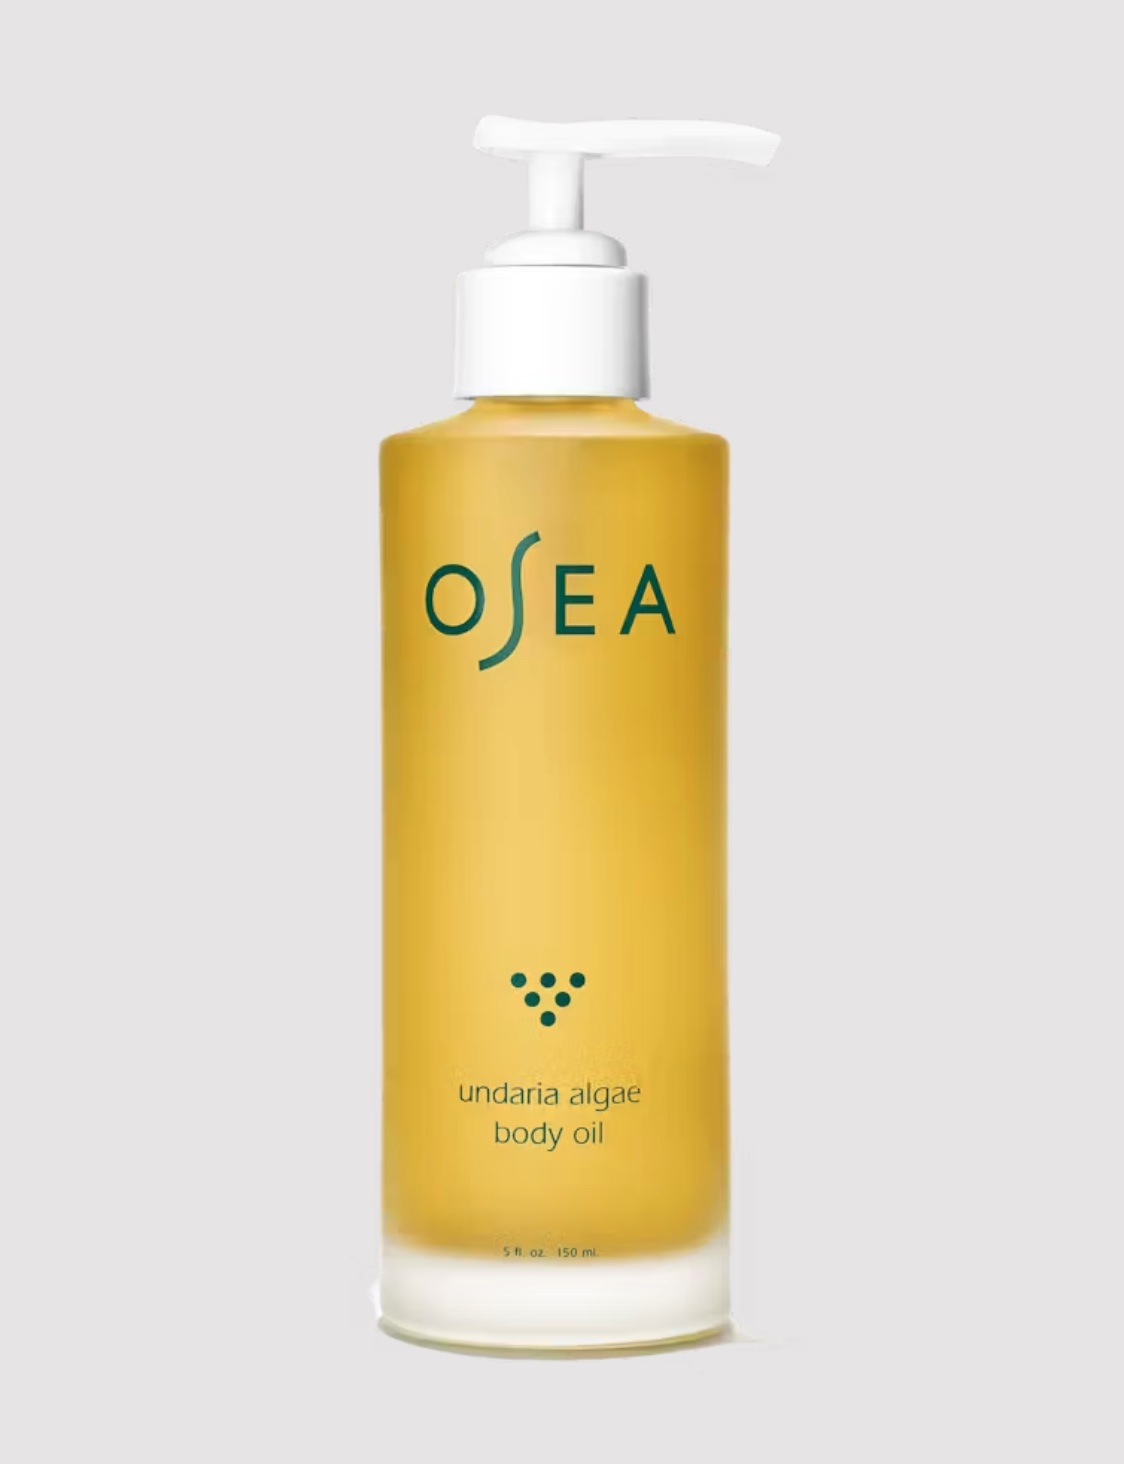 A bottle of the OSEA body oil in a gray studio shot.